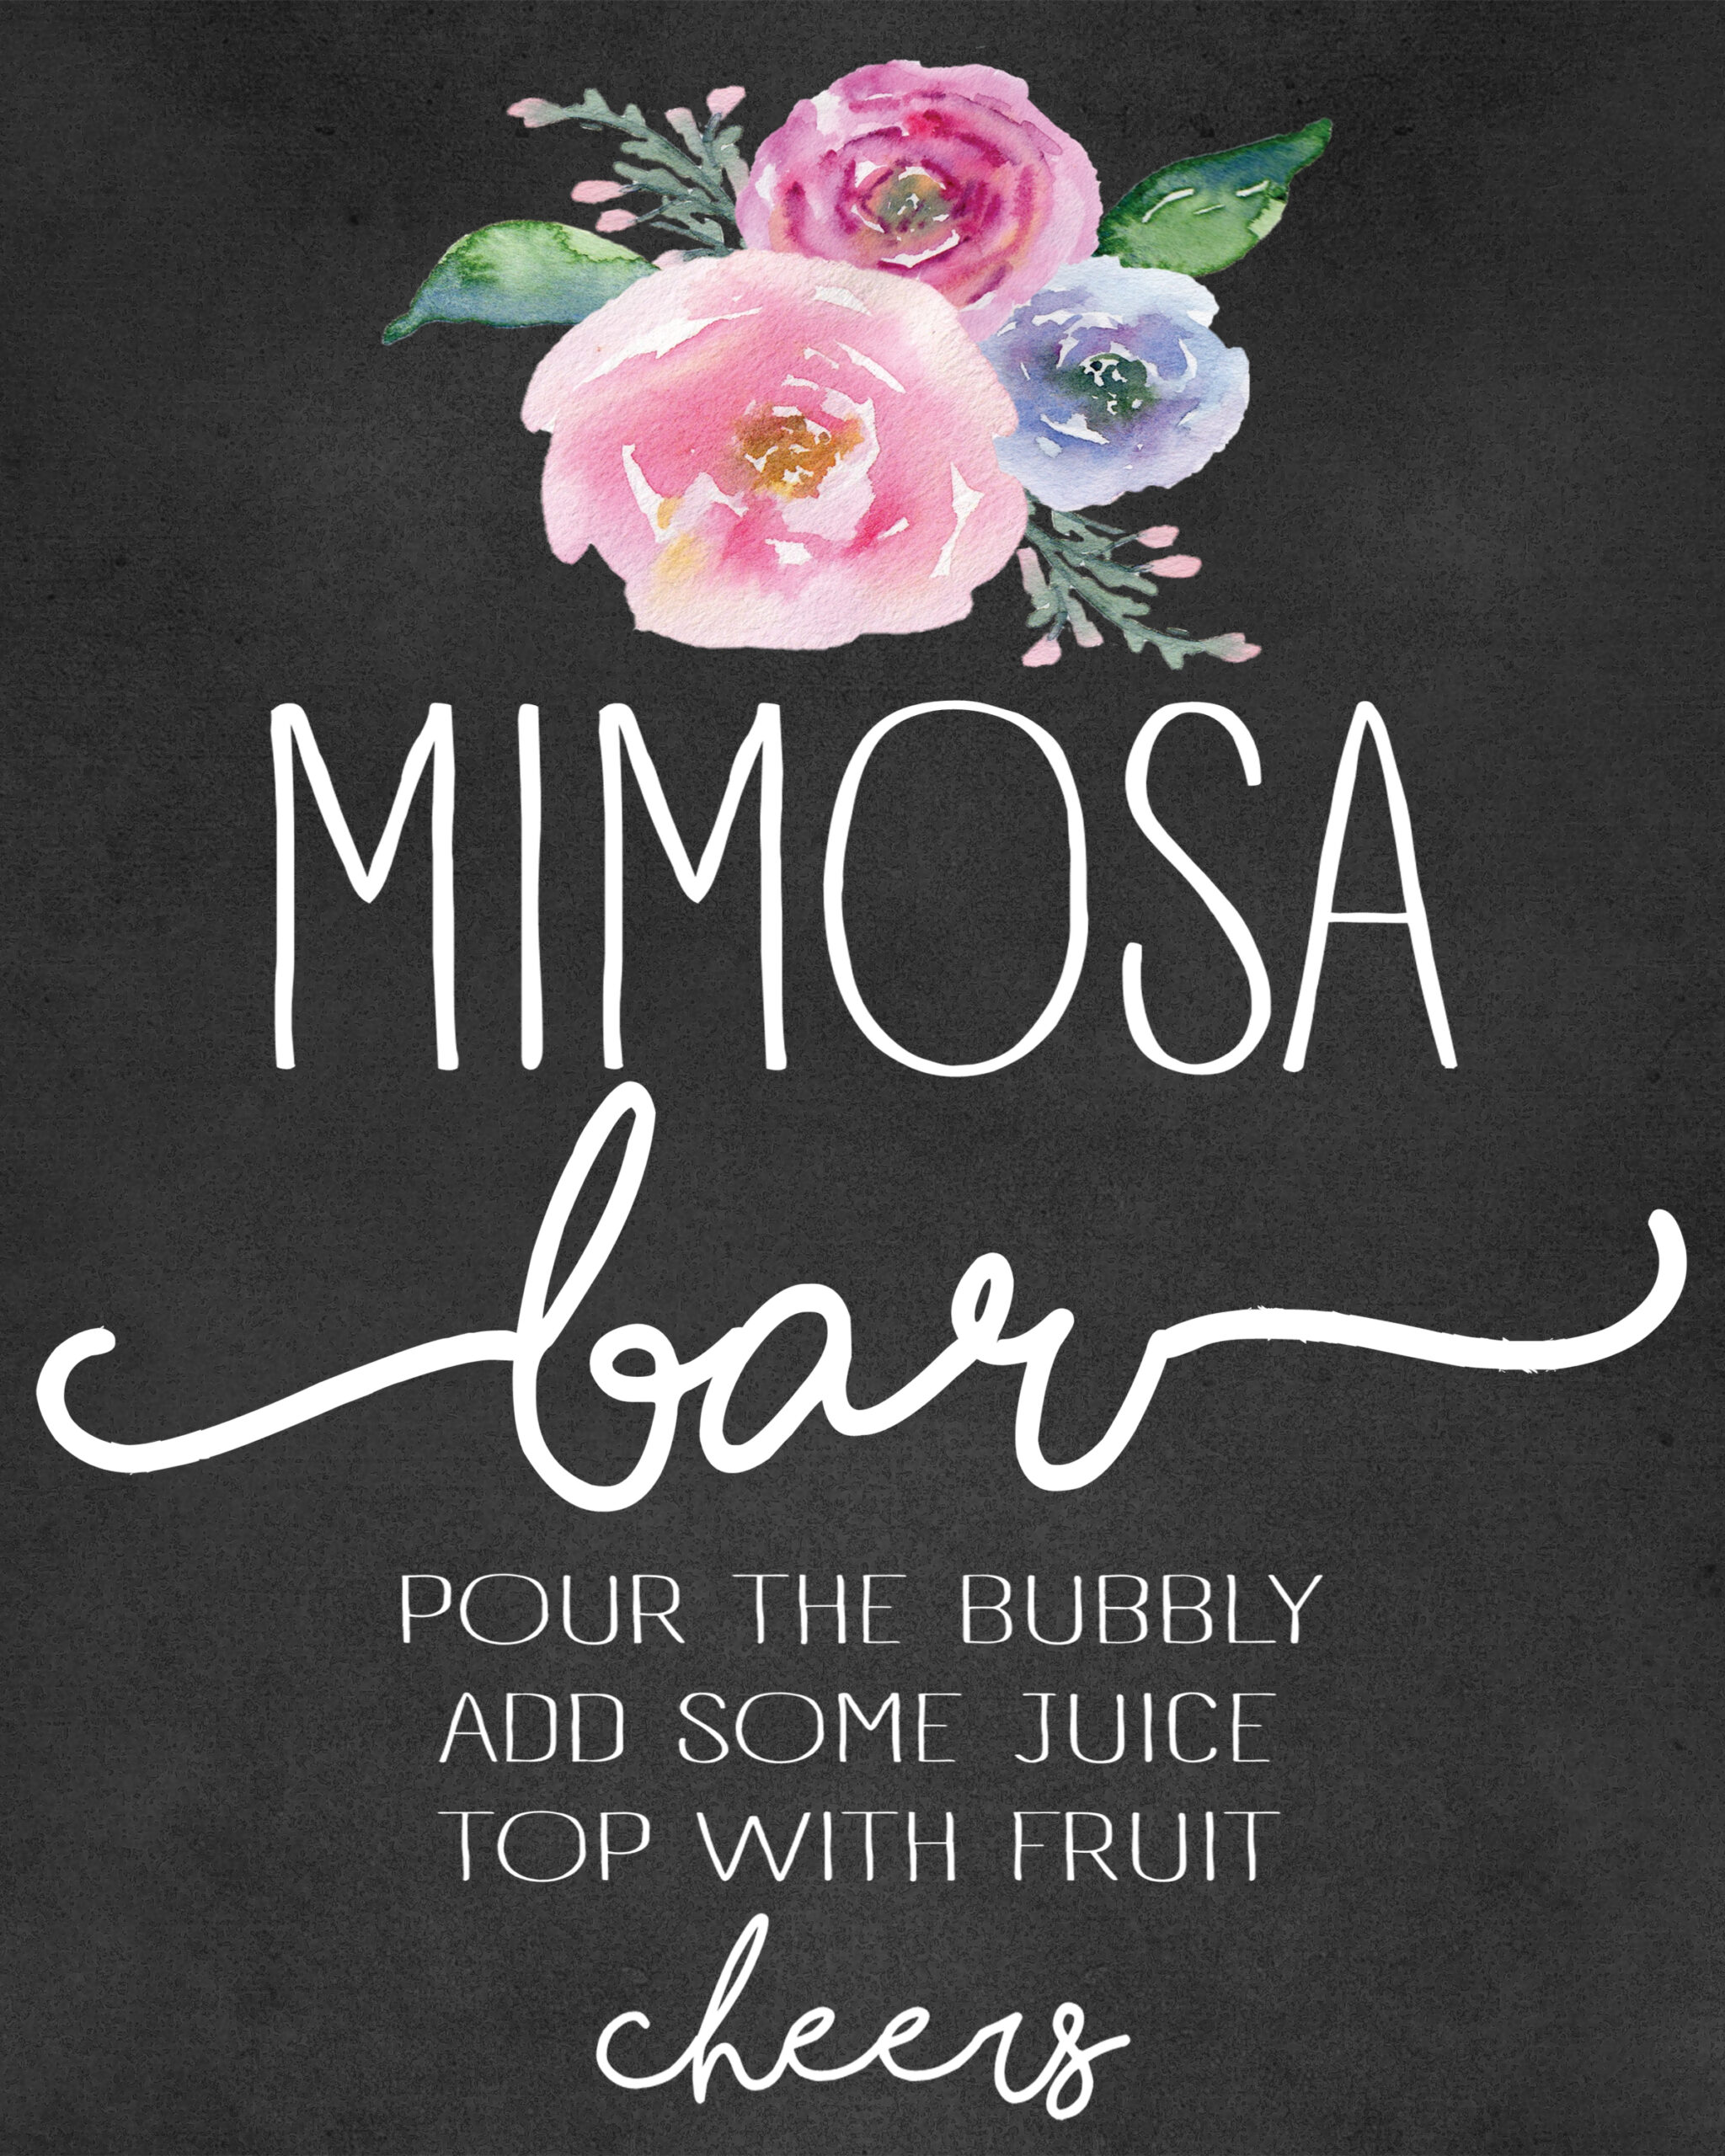 Mimosa Bar Setup And Free Shower Printables intended for Free Printable Mimosa Bar Sign